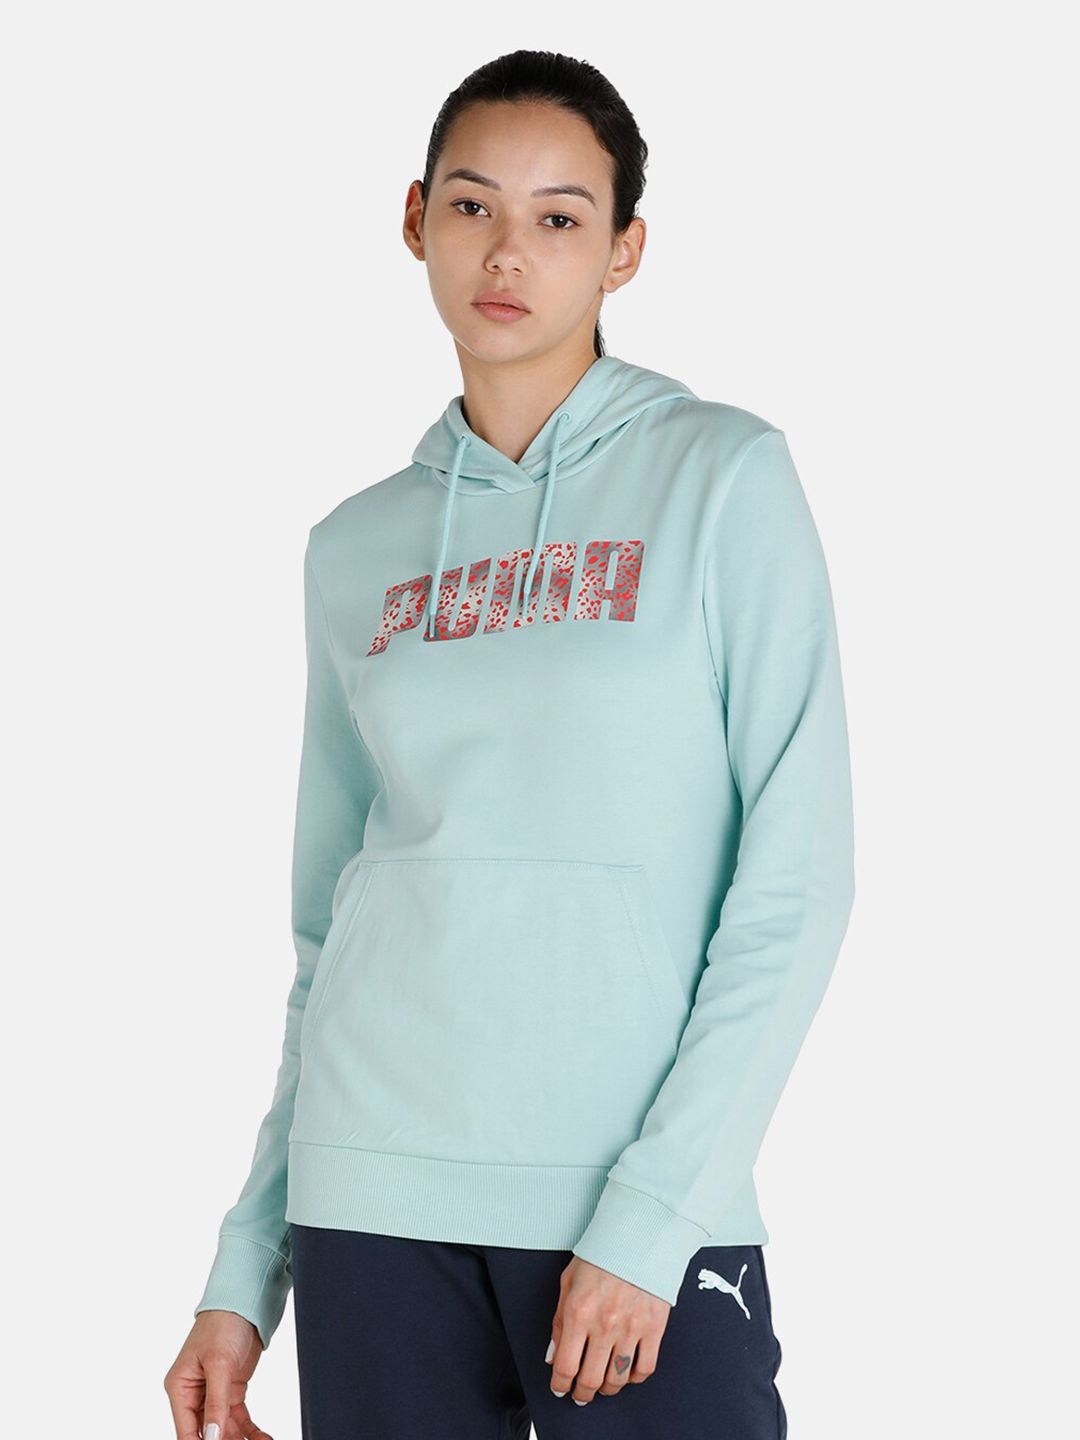 Puma Women Blue Printed Slip on Hoodie Sweatshirt Price in India